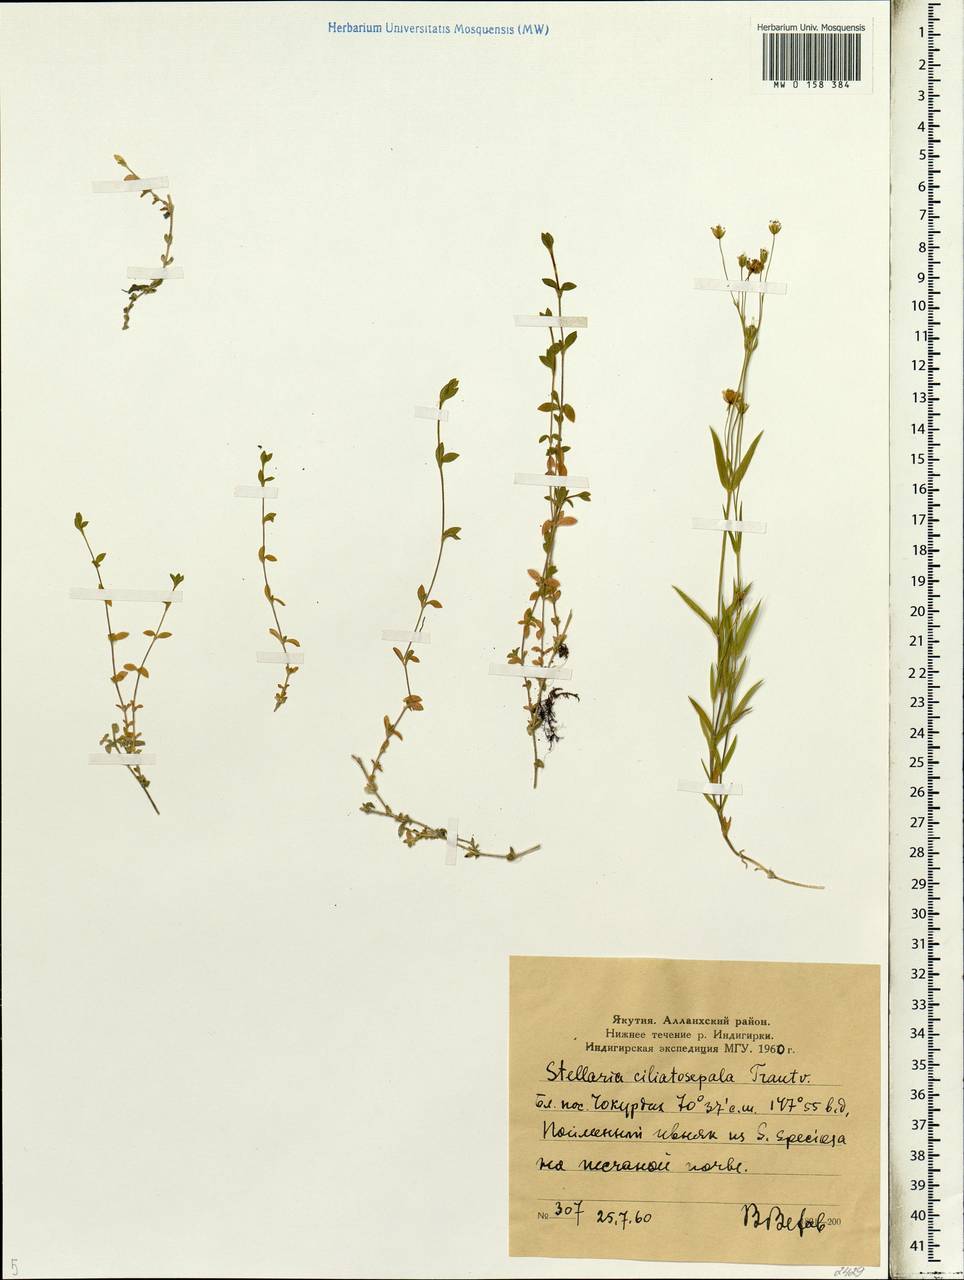 Stellaria longipes subsp. longipes, Siberia, Yakutia (S5) (Russia)